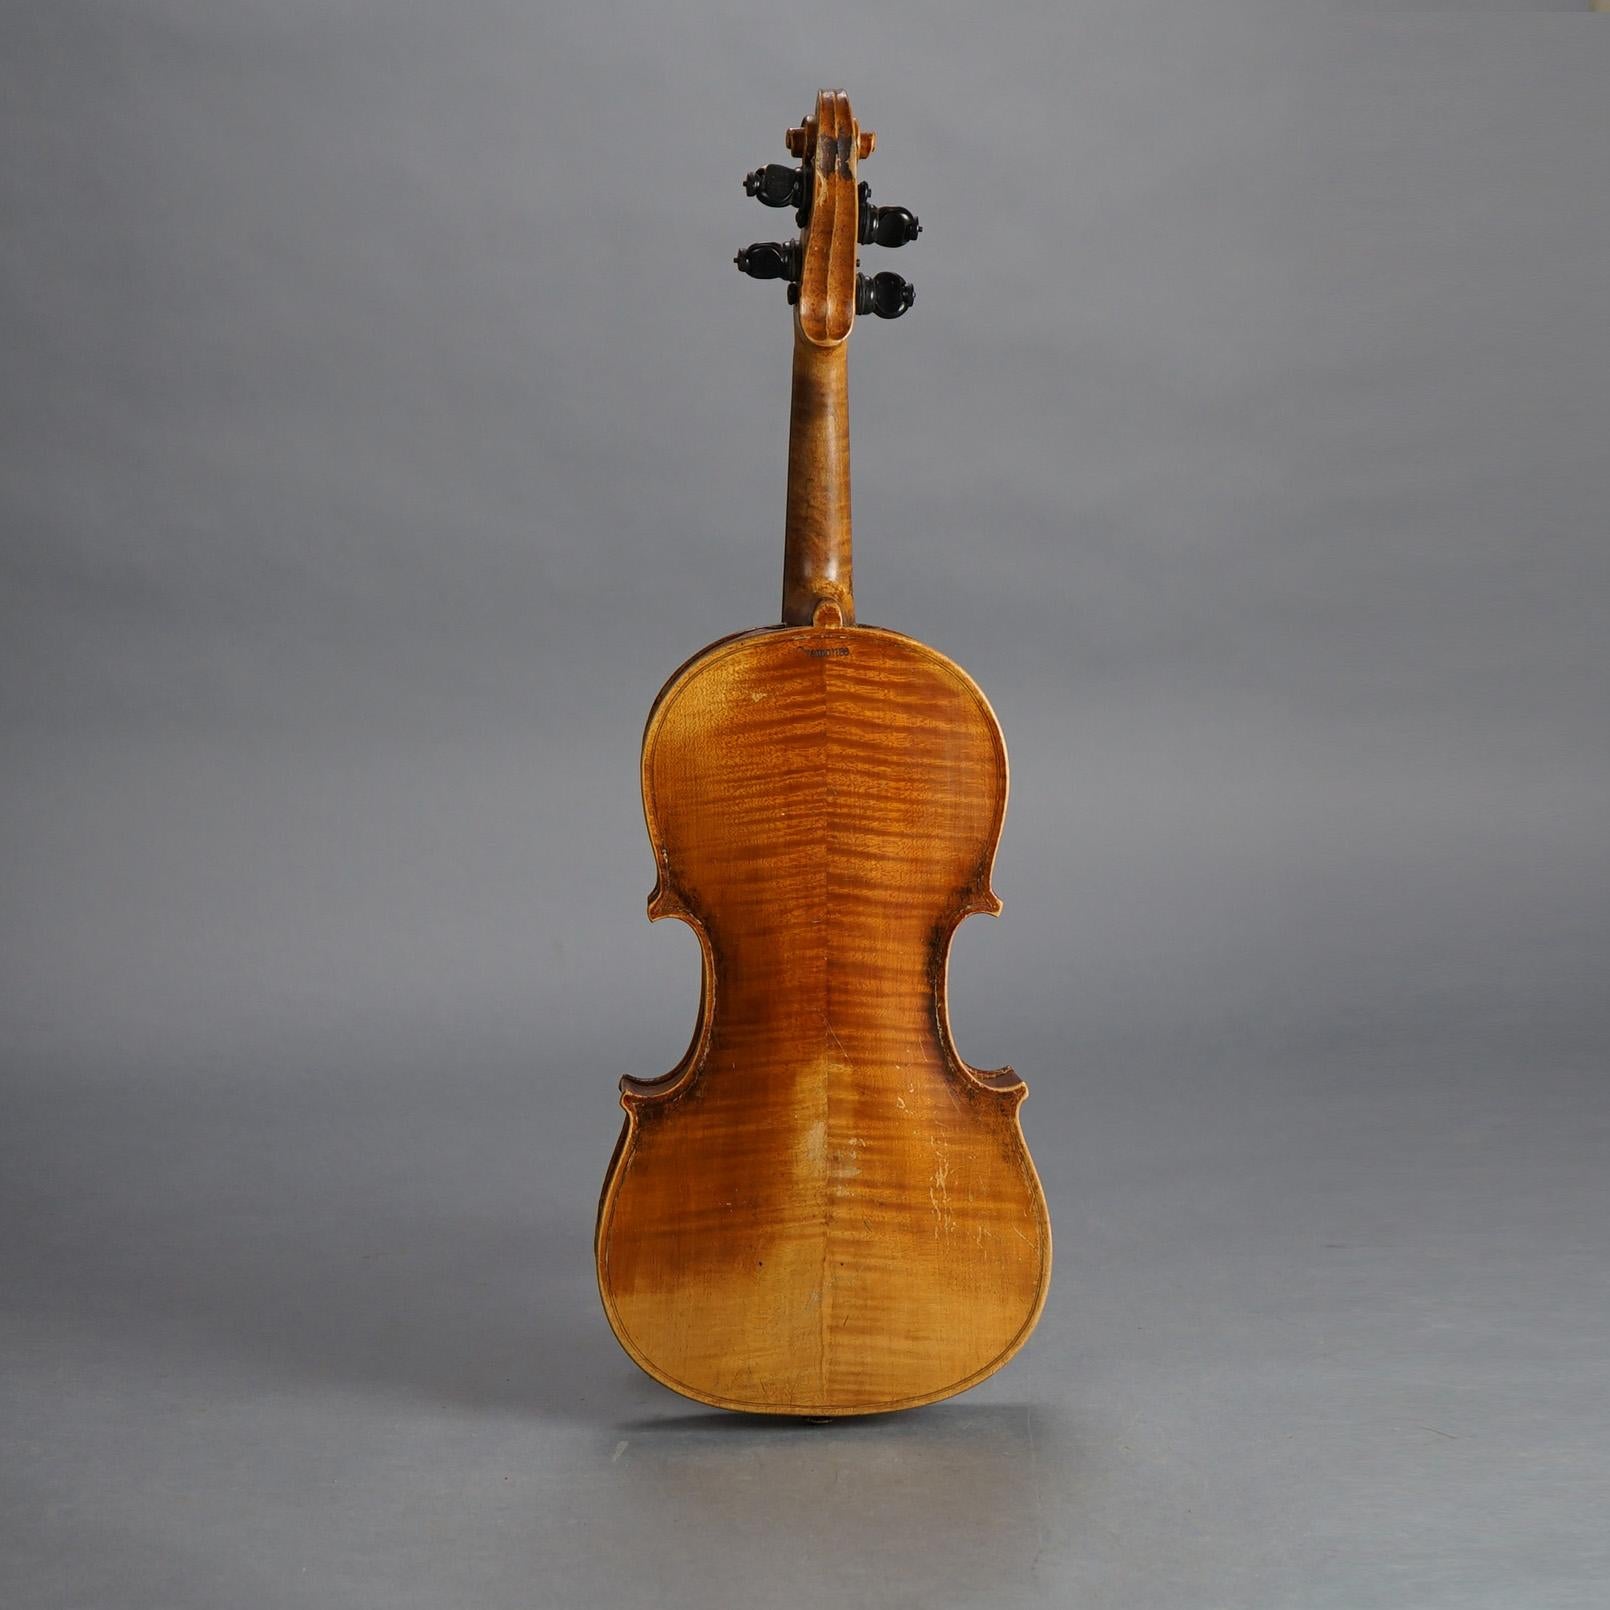 Antike Jacob Steiner School Cremonae- Violine, Schleife und Etui, um 1900

Maße - 31,5 